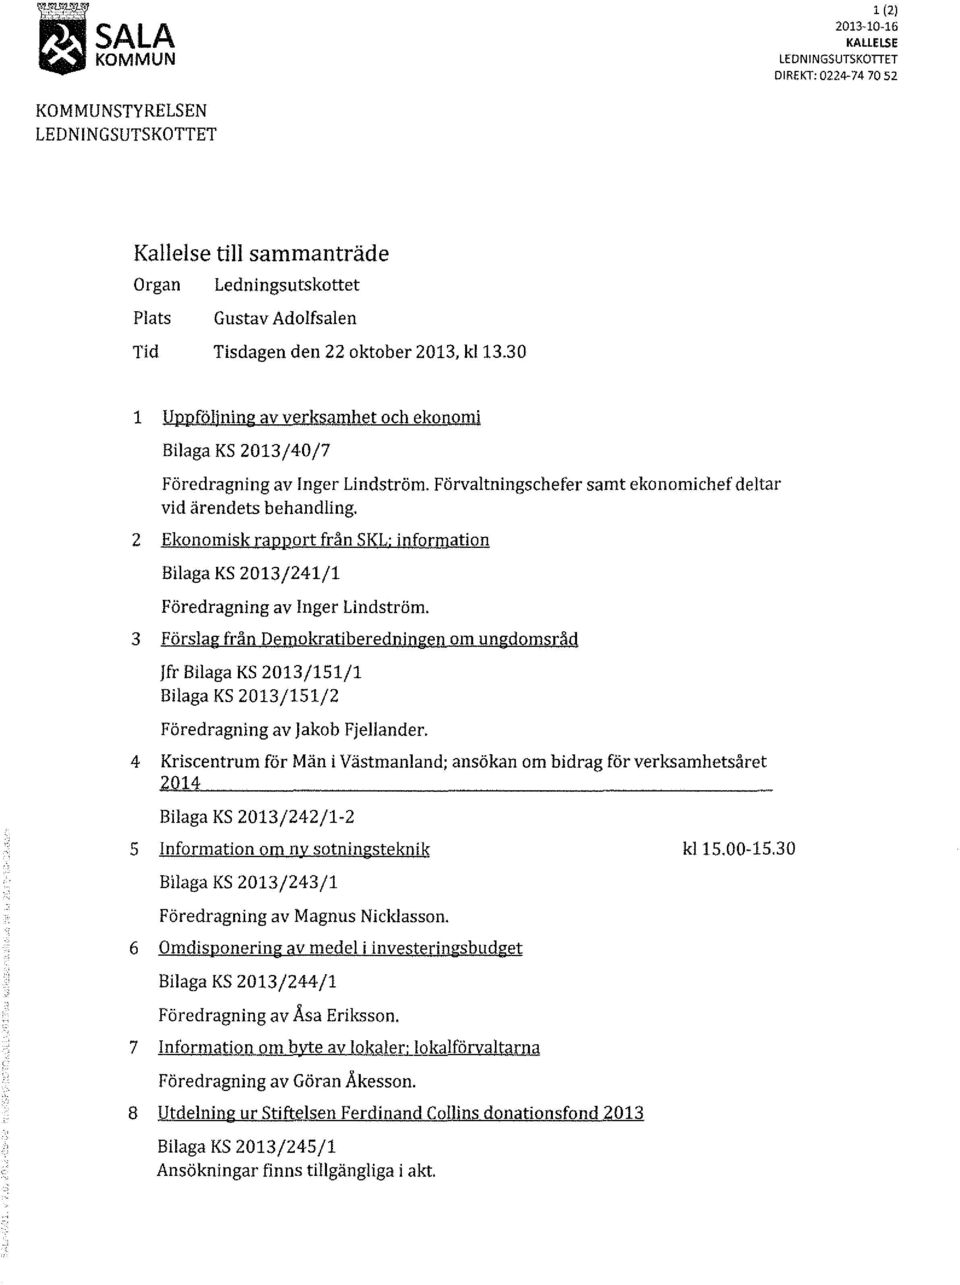 2 Ekonomisk rapport från SKL: information Bilaga KS 2013/241/1 Föredragning av Inger Lindström.